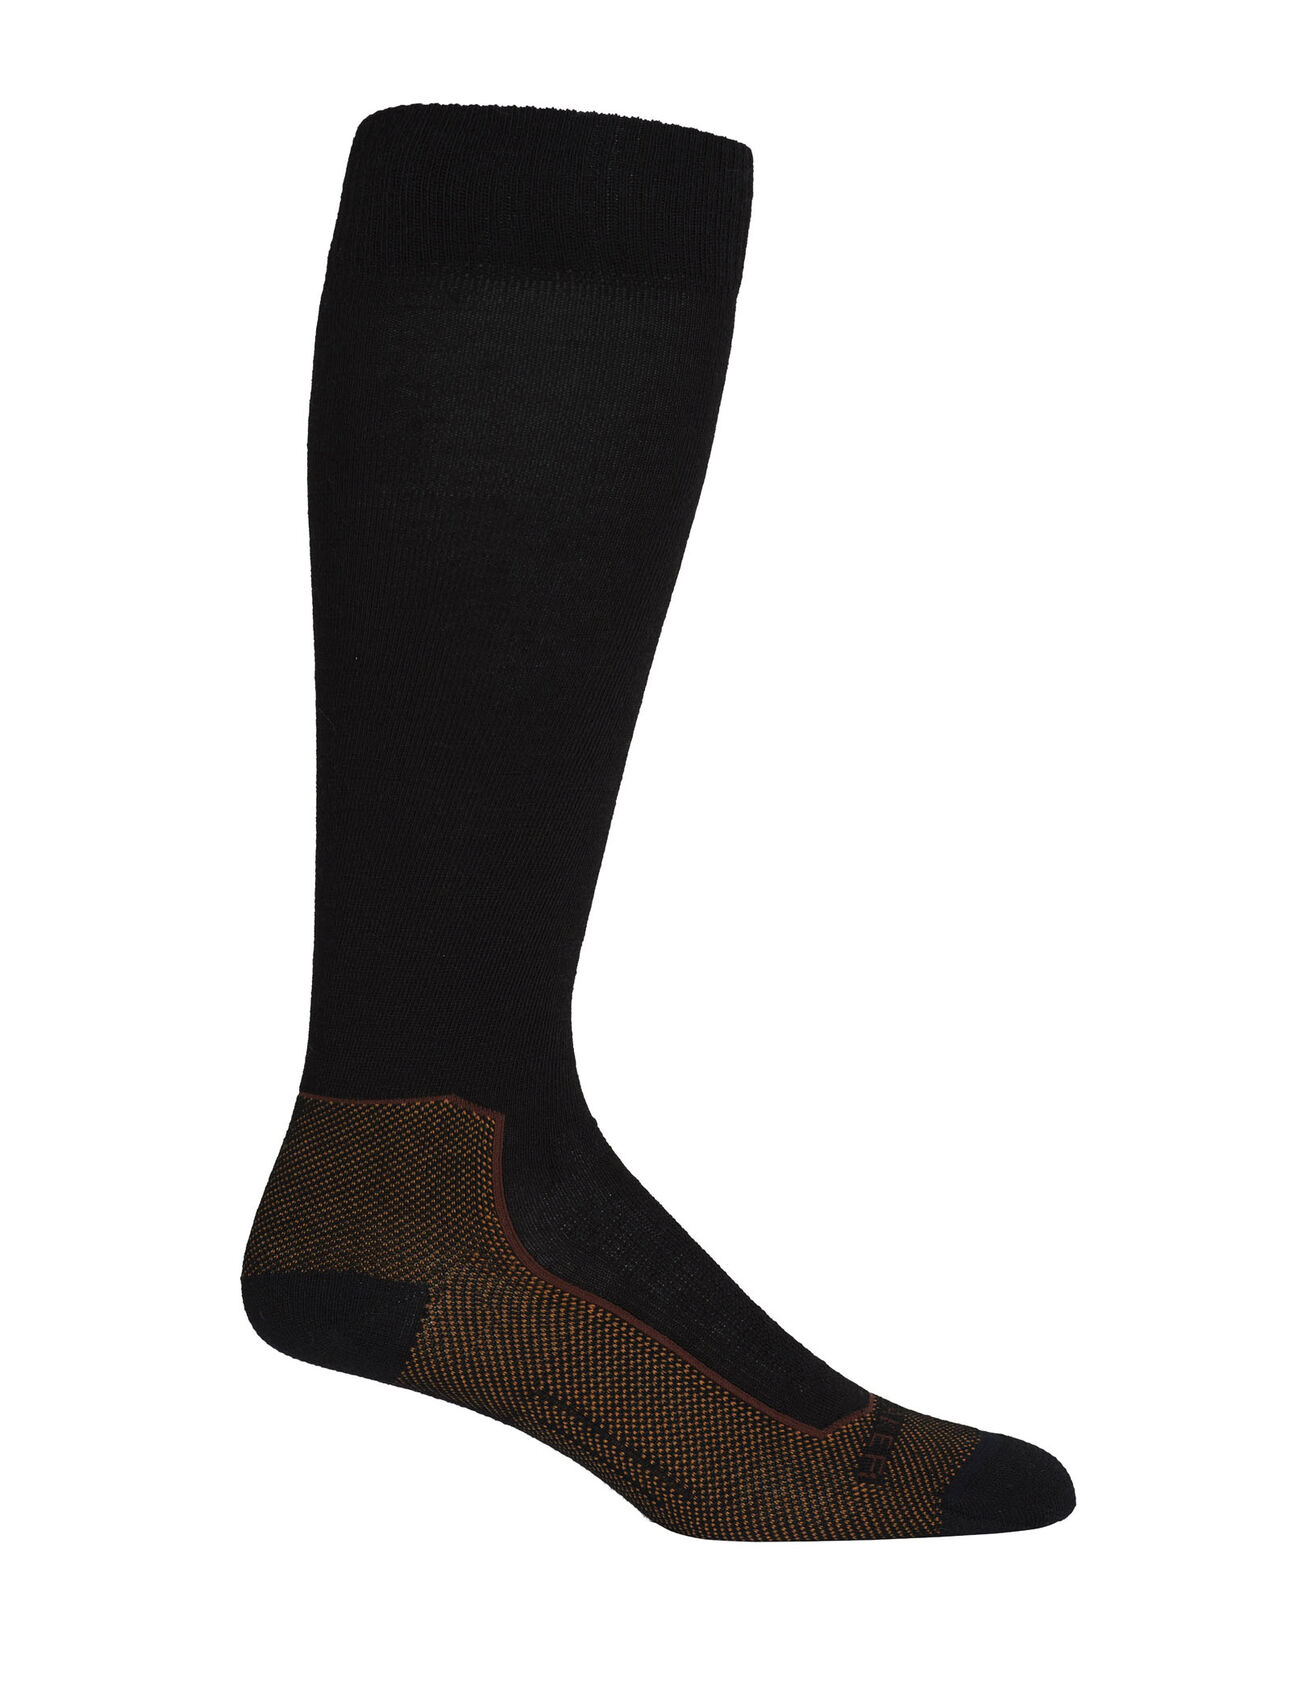 Merino Ski+ Ultralight Over the Calf Socks